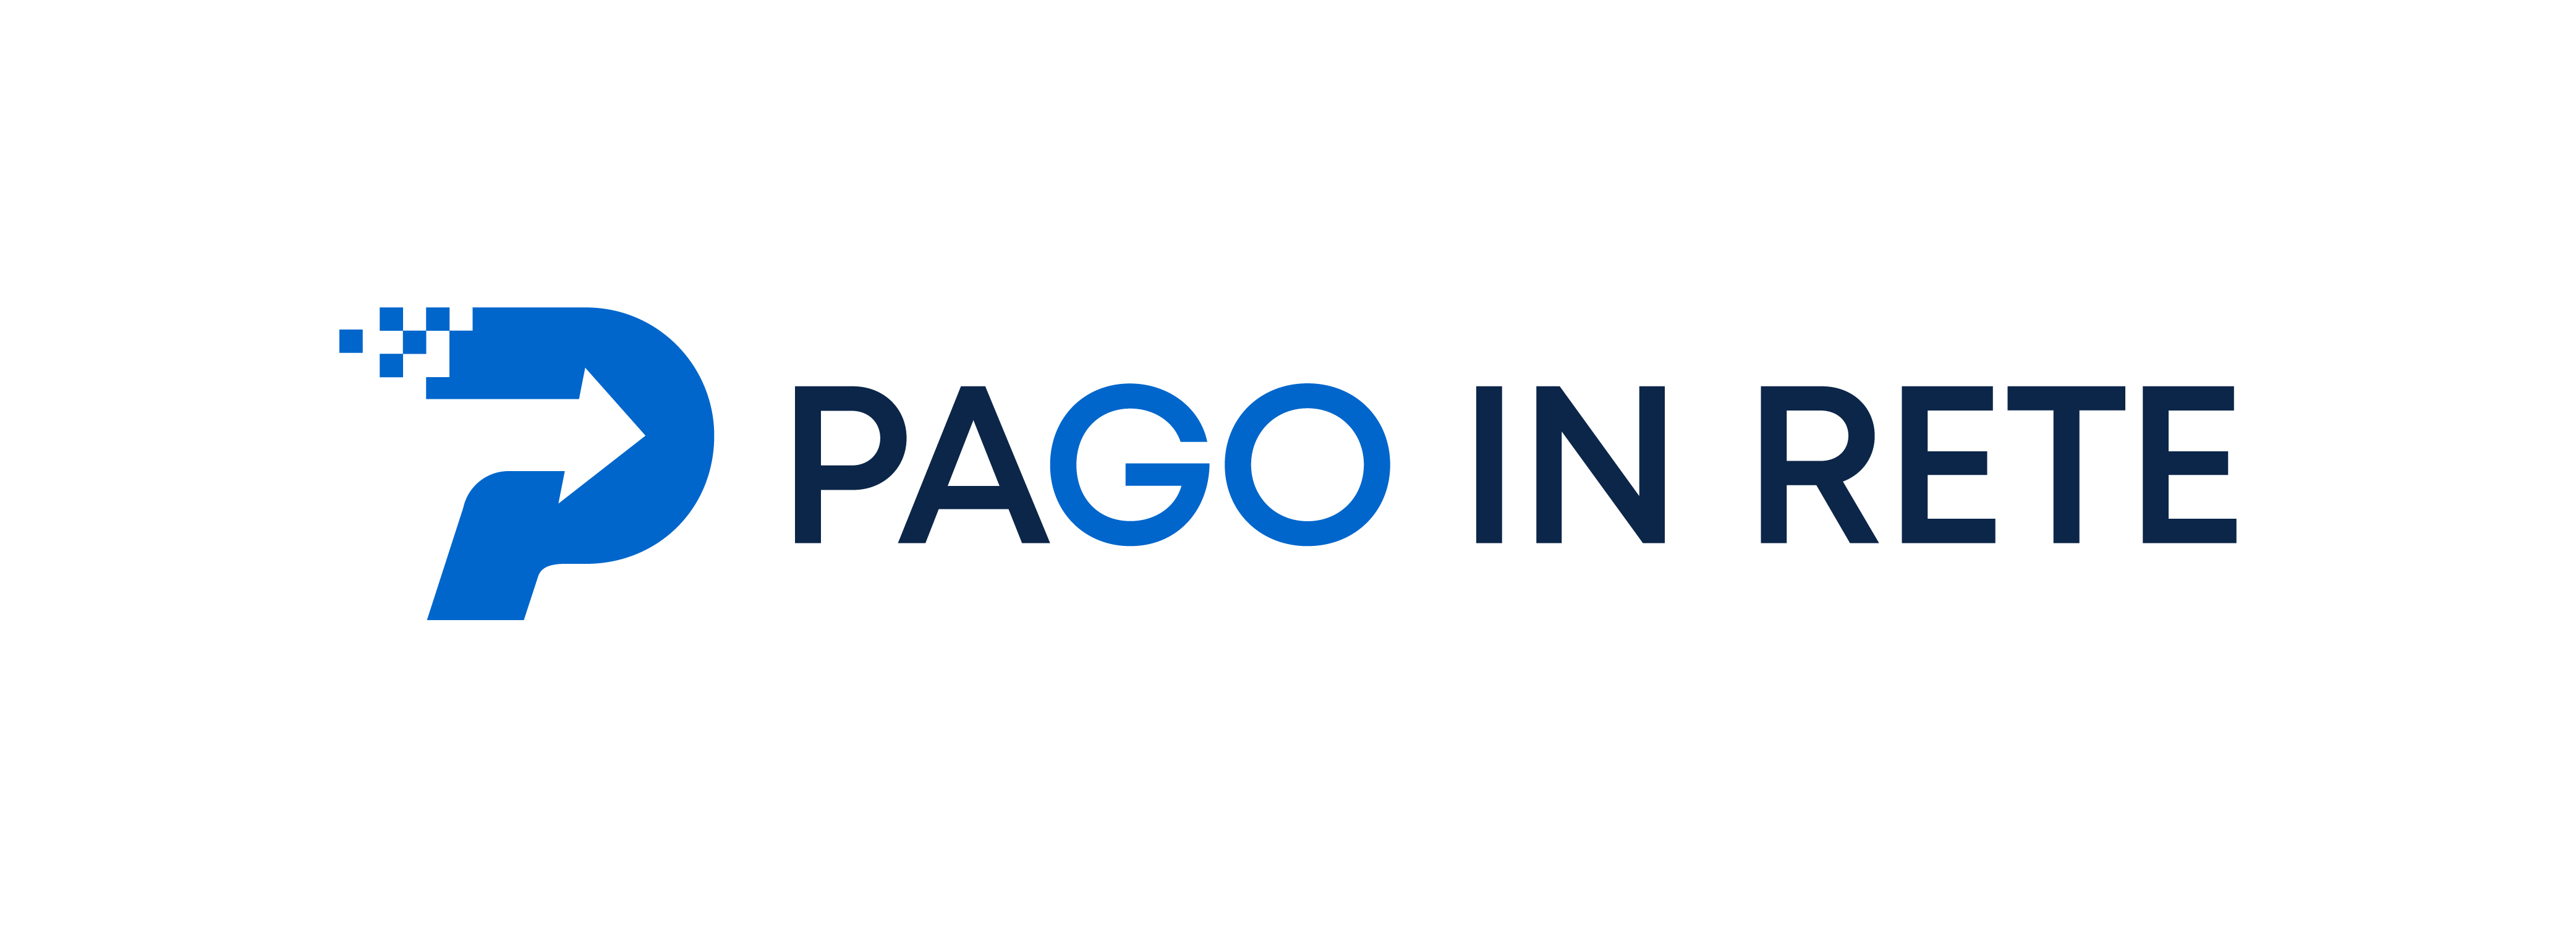 Si comunica che il Ministero della Pubblica Istruzione ha fornito il nuovo logo ufficiale Pago in rete